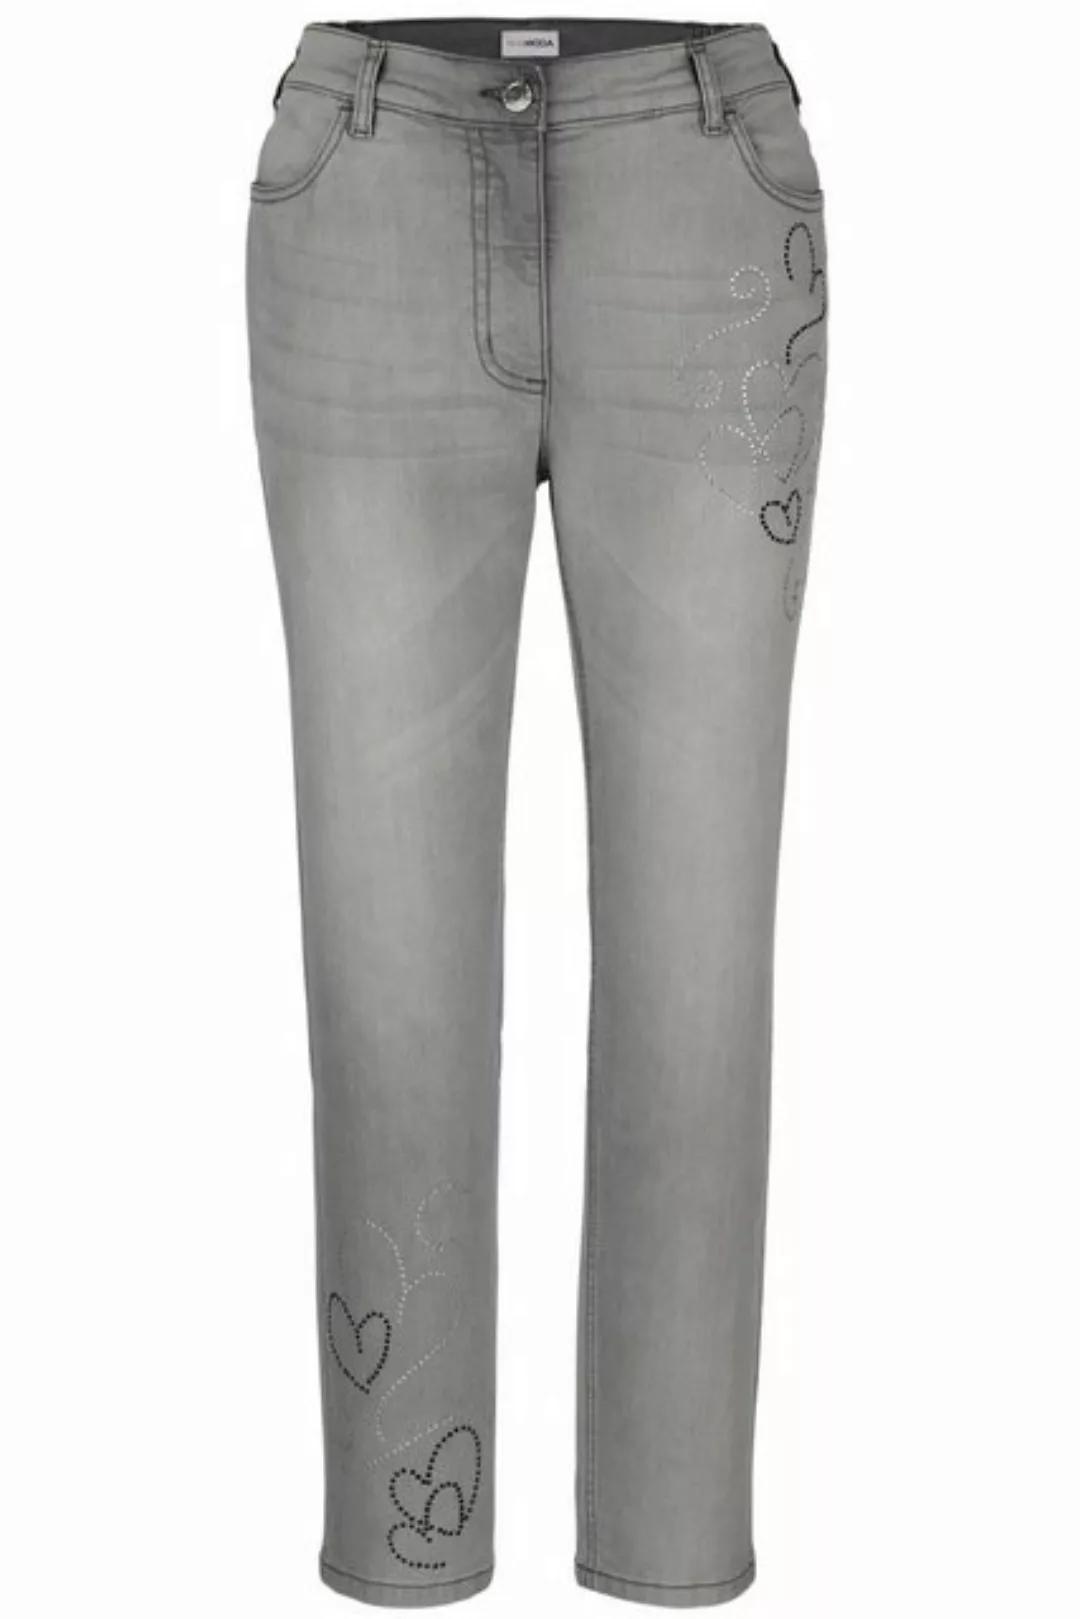 MIAMODA Röhrenjeans 7/8-Jeans Slim Fit Glitzerherzchen 4-Pocket günstig online kaufen